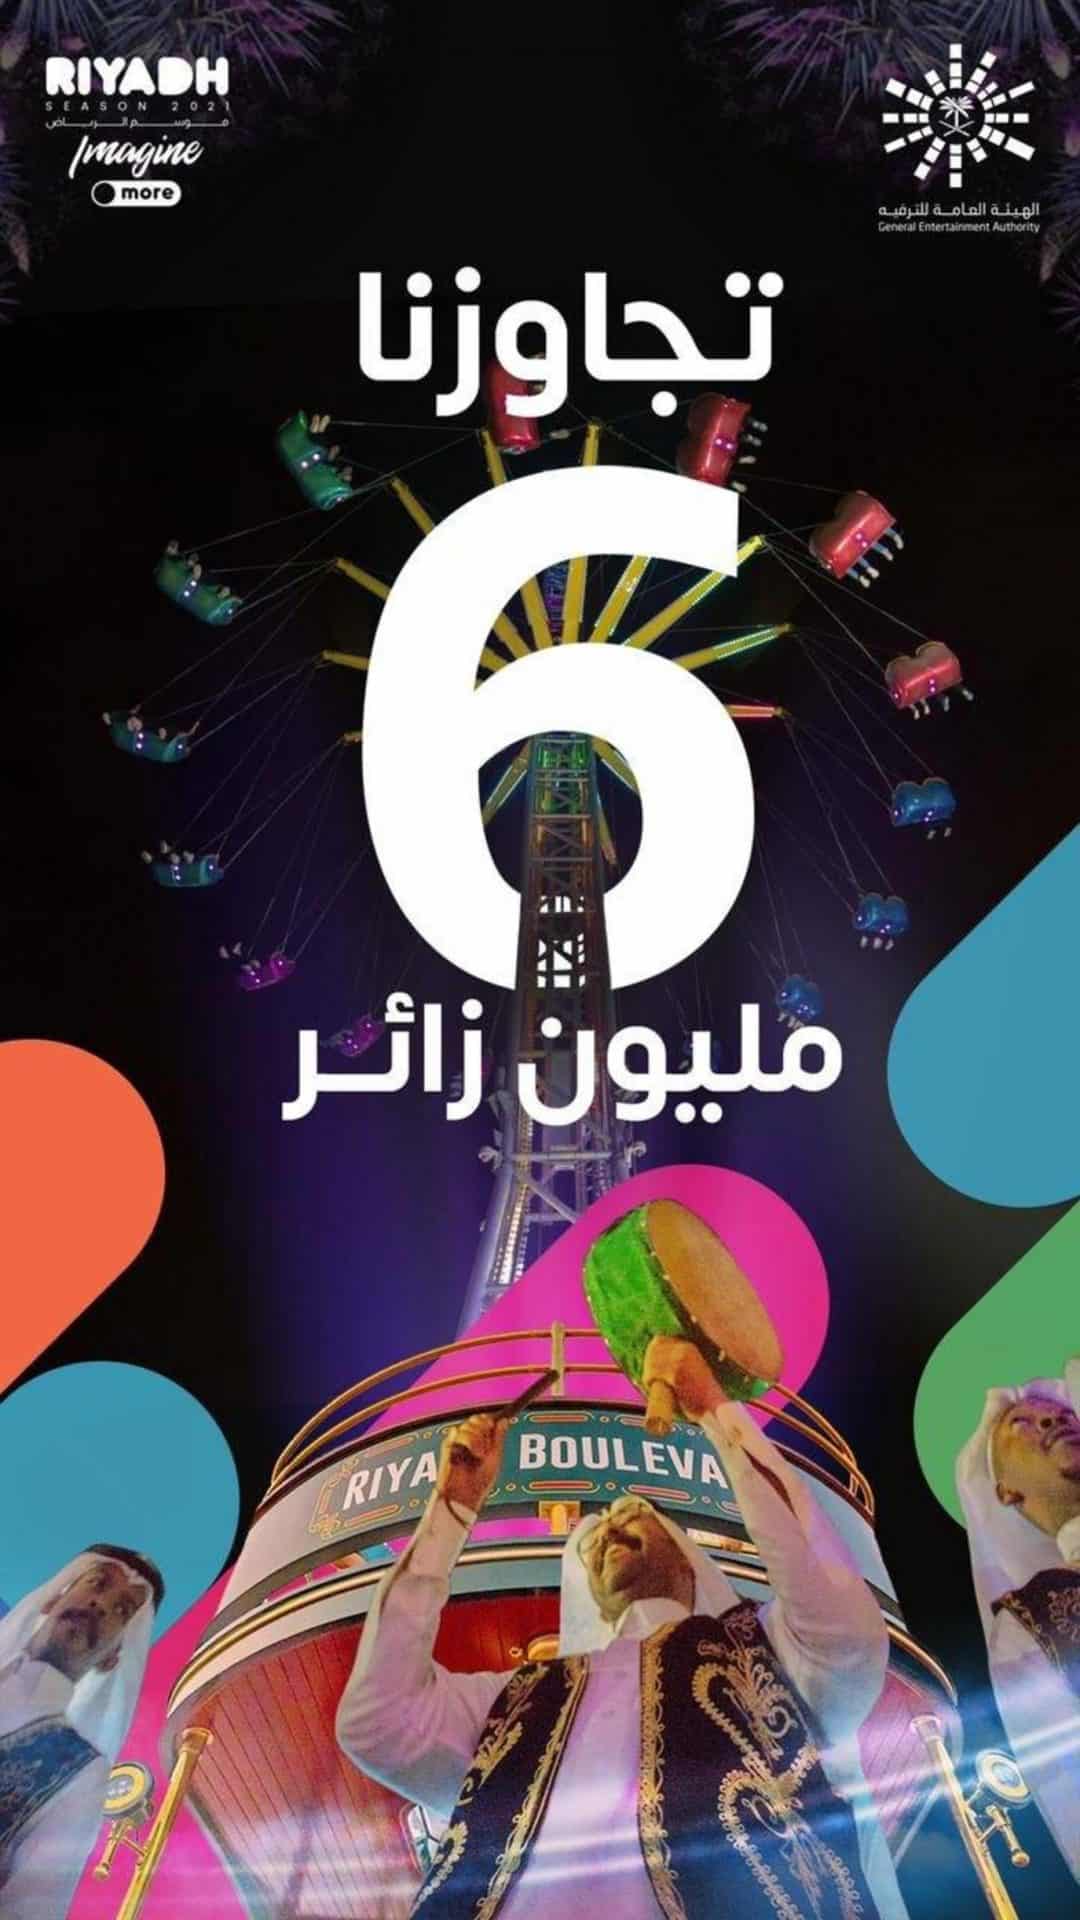 موسم الرياض 2021 يعلن تجاوزه الـ6 مليون زائر